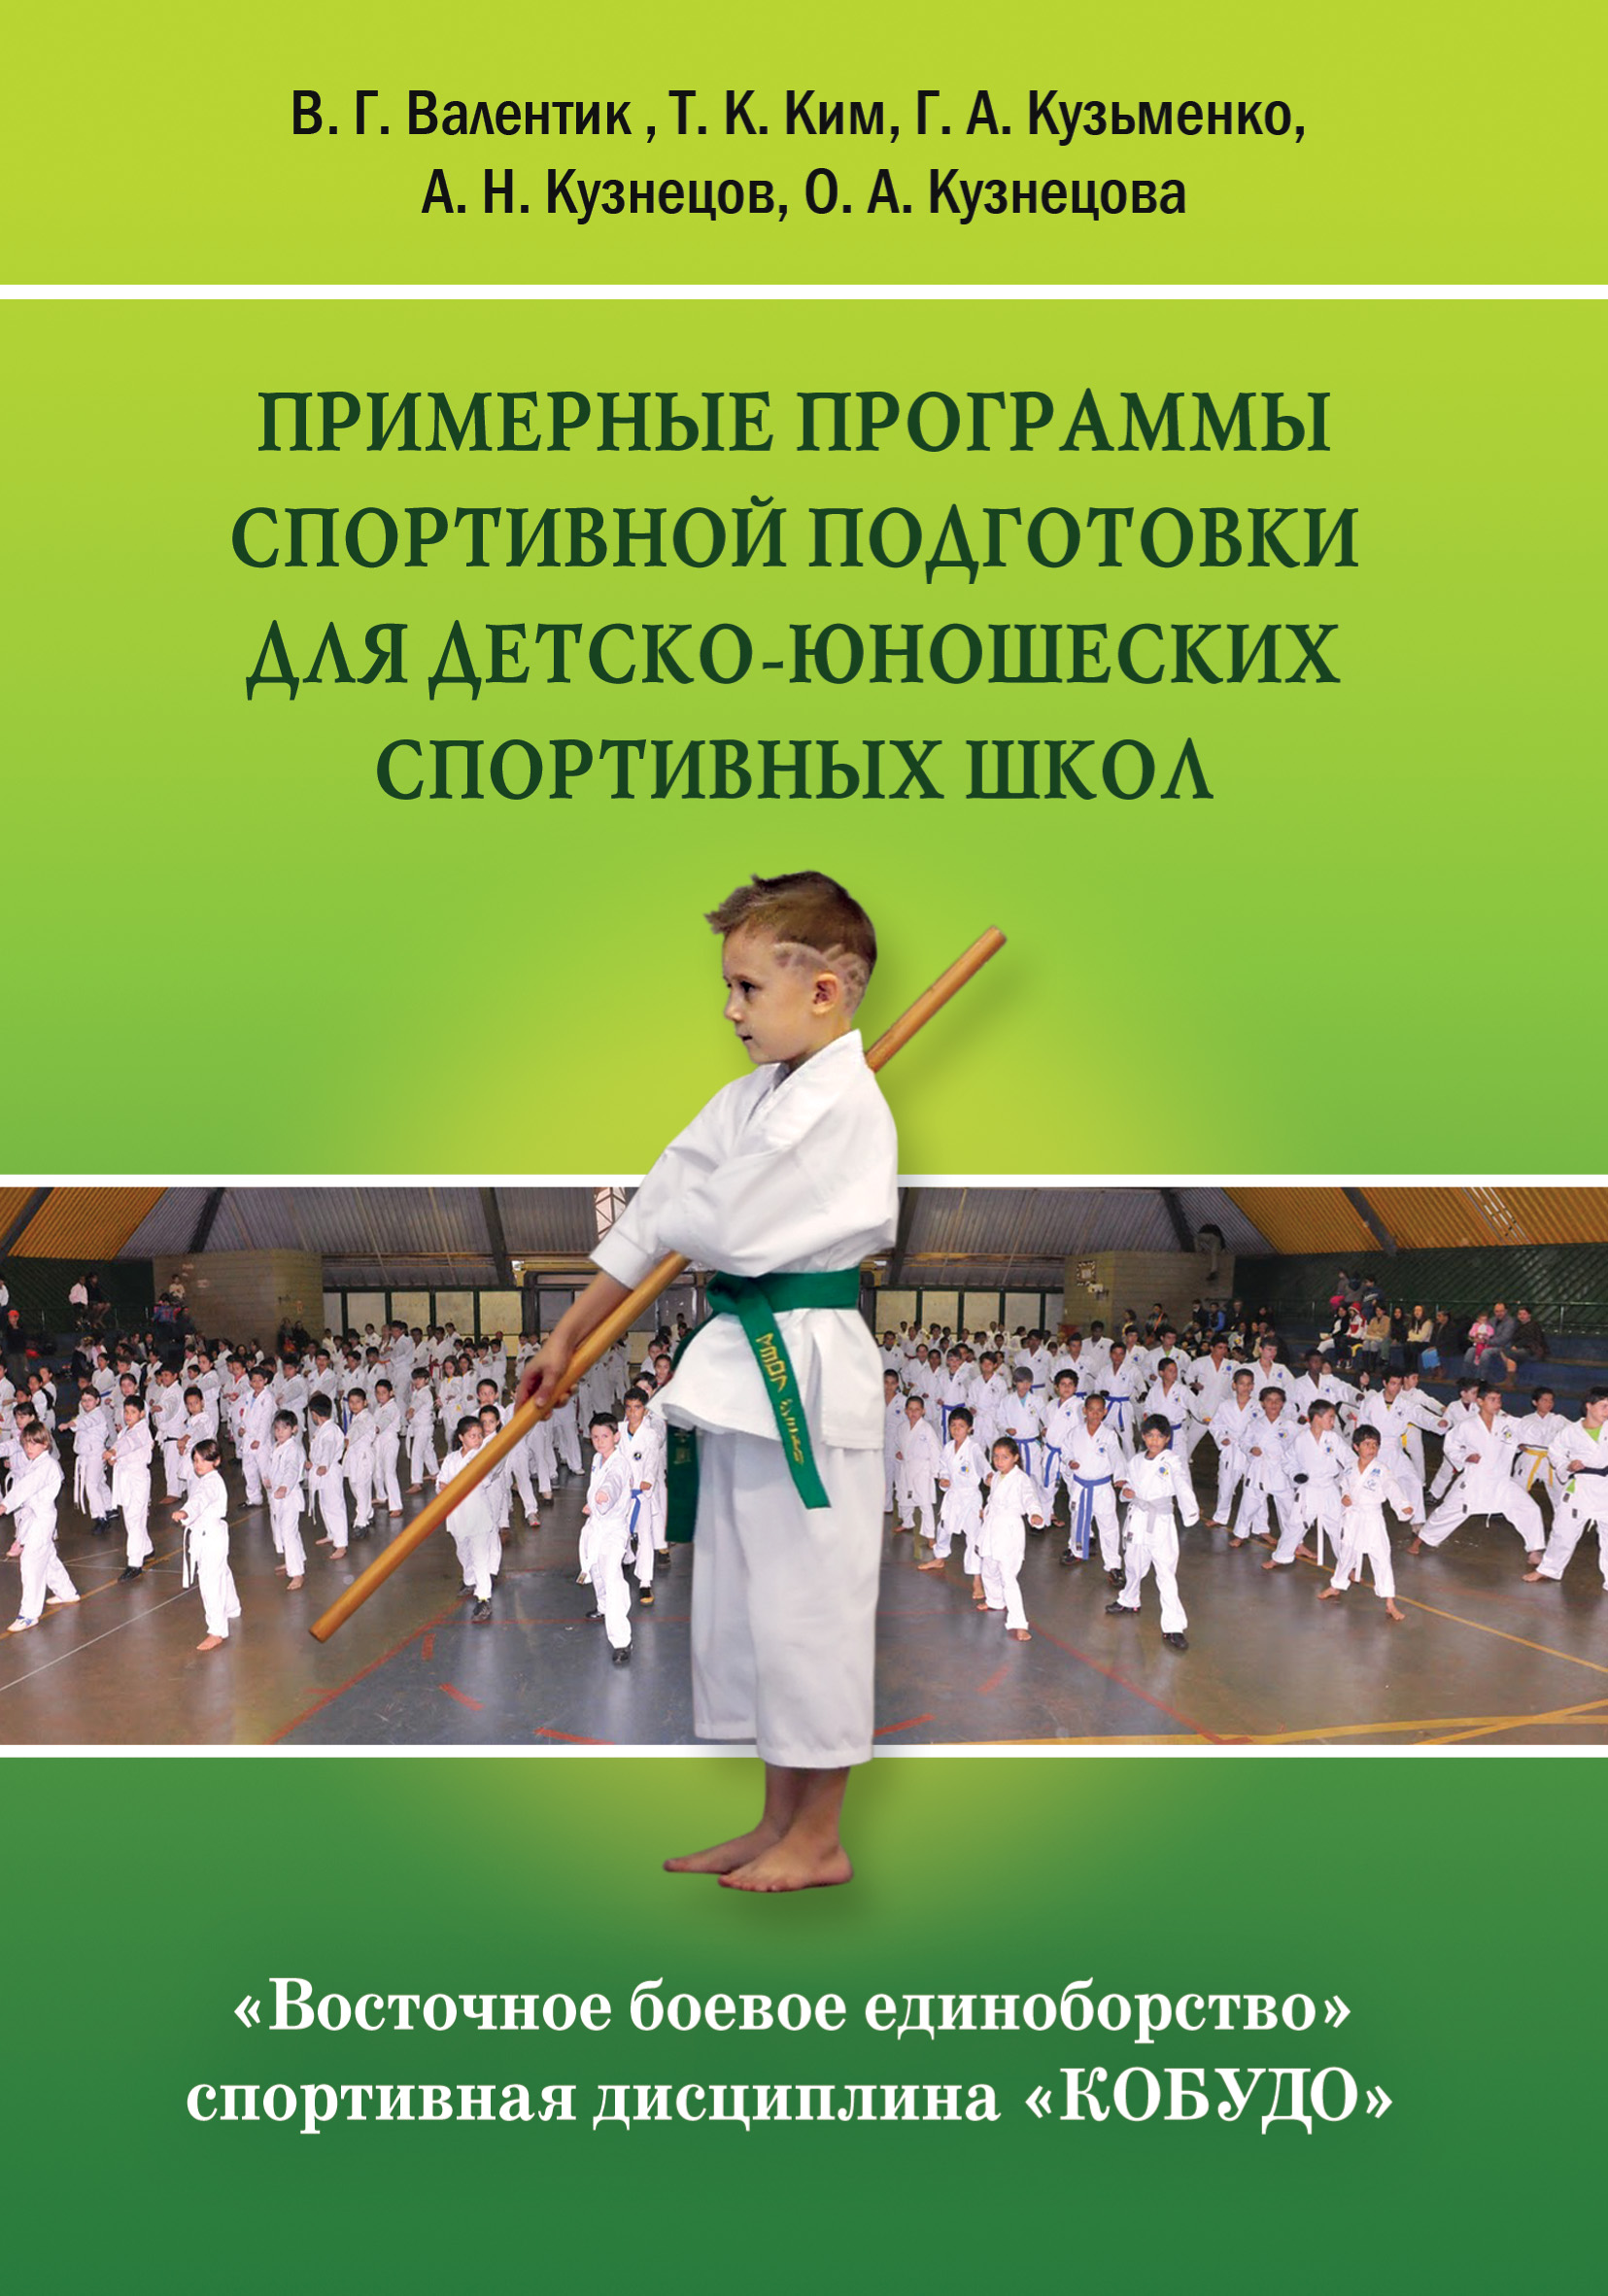 Восточное боевое единоборство – спортивная дисциплина «Кобудо». Примерные программы спортивной подготовки для детско-юношеских спортивных школ